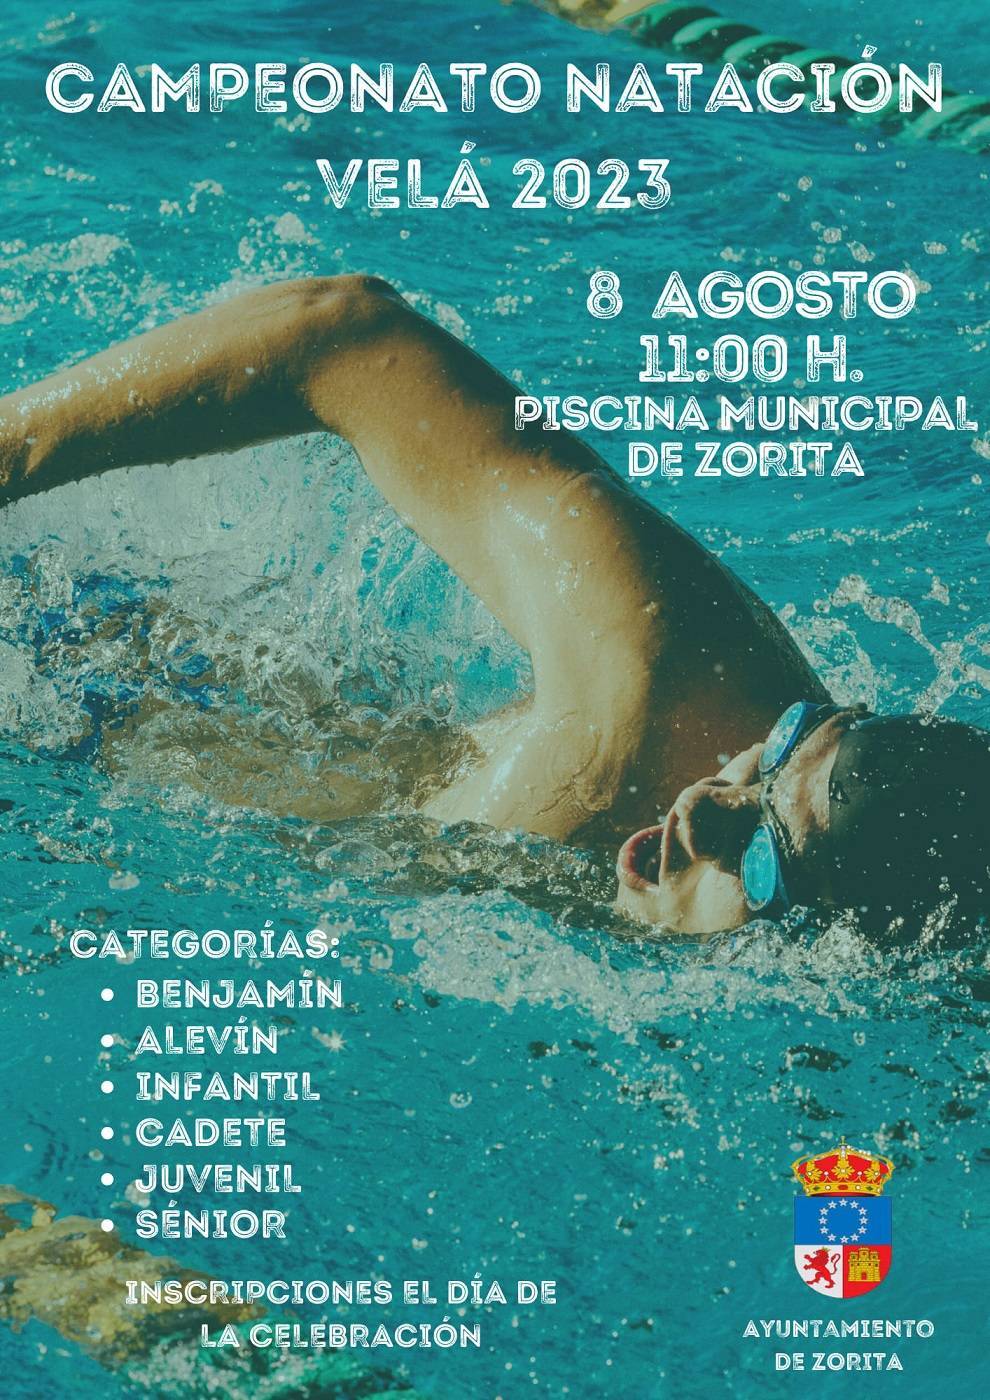 Campeonato de natación Velá (2023) - Zorita (Cáceres)